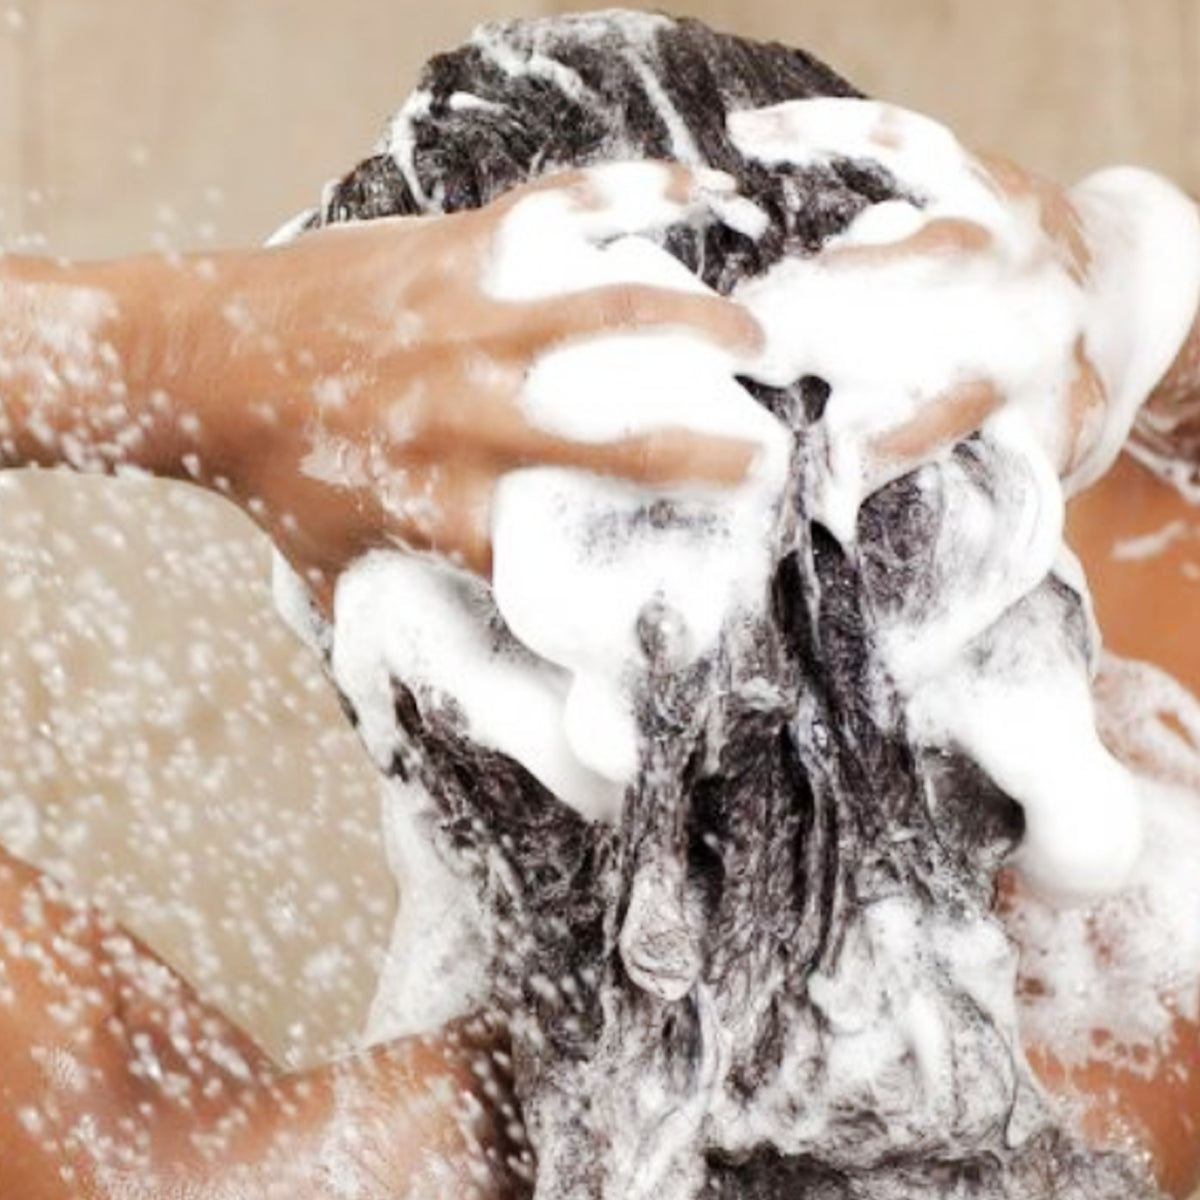 shampoo rizos obedientes con minoxidil